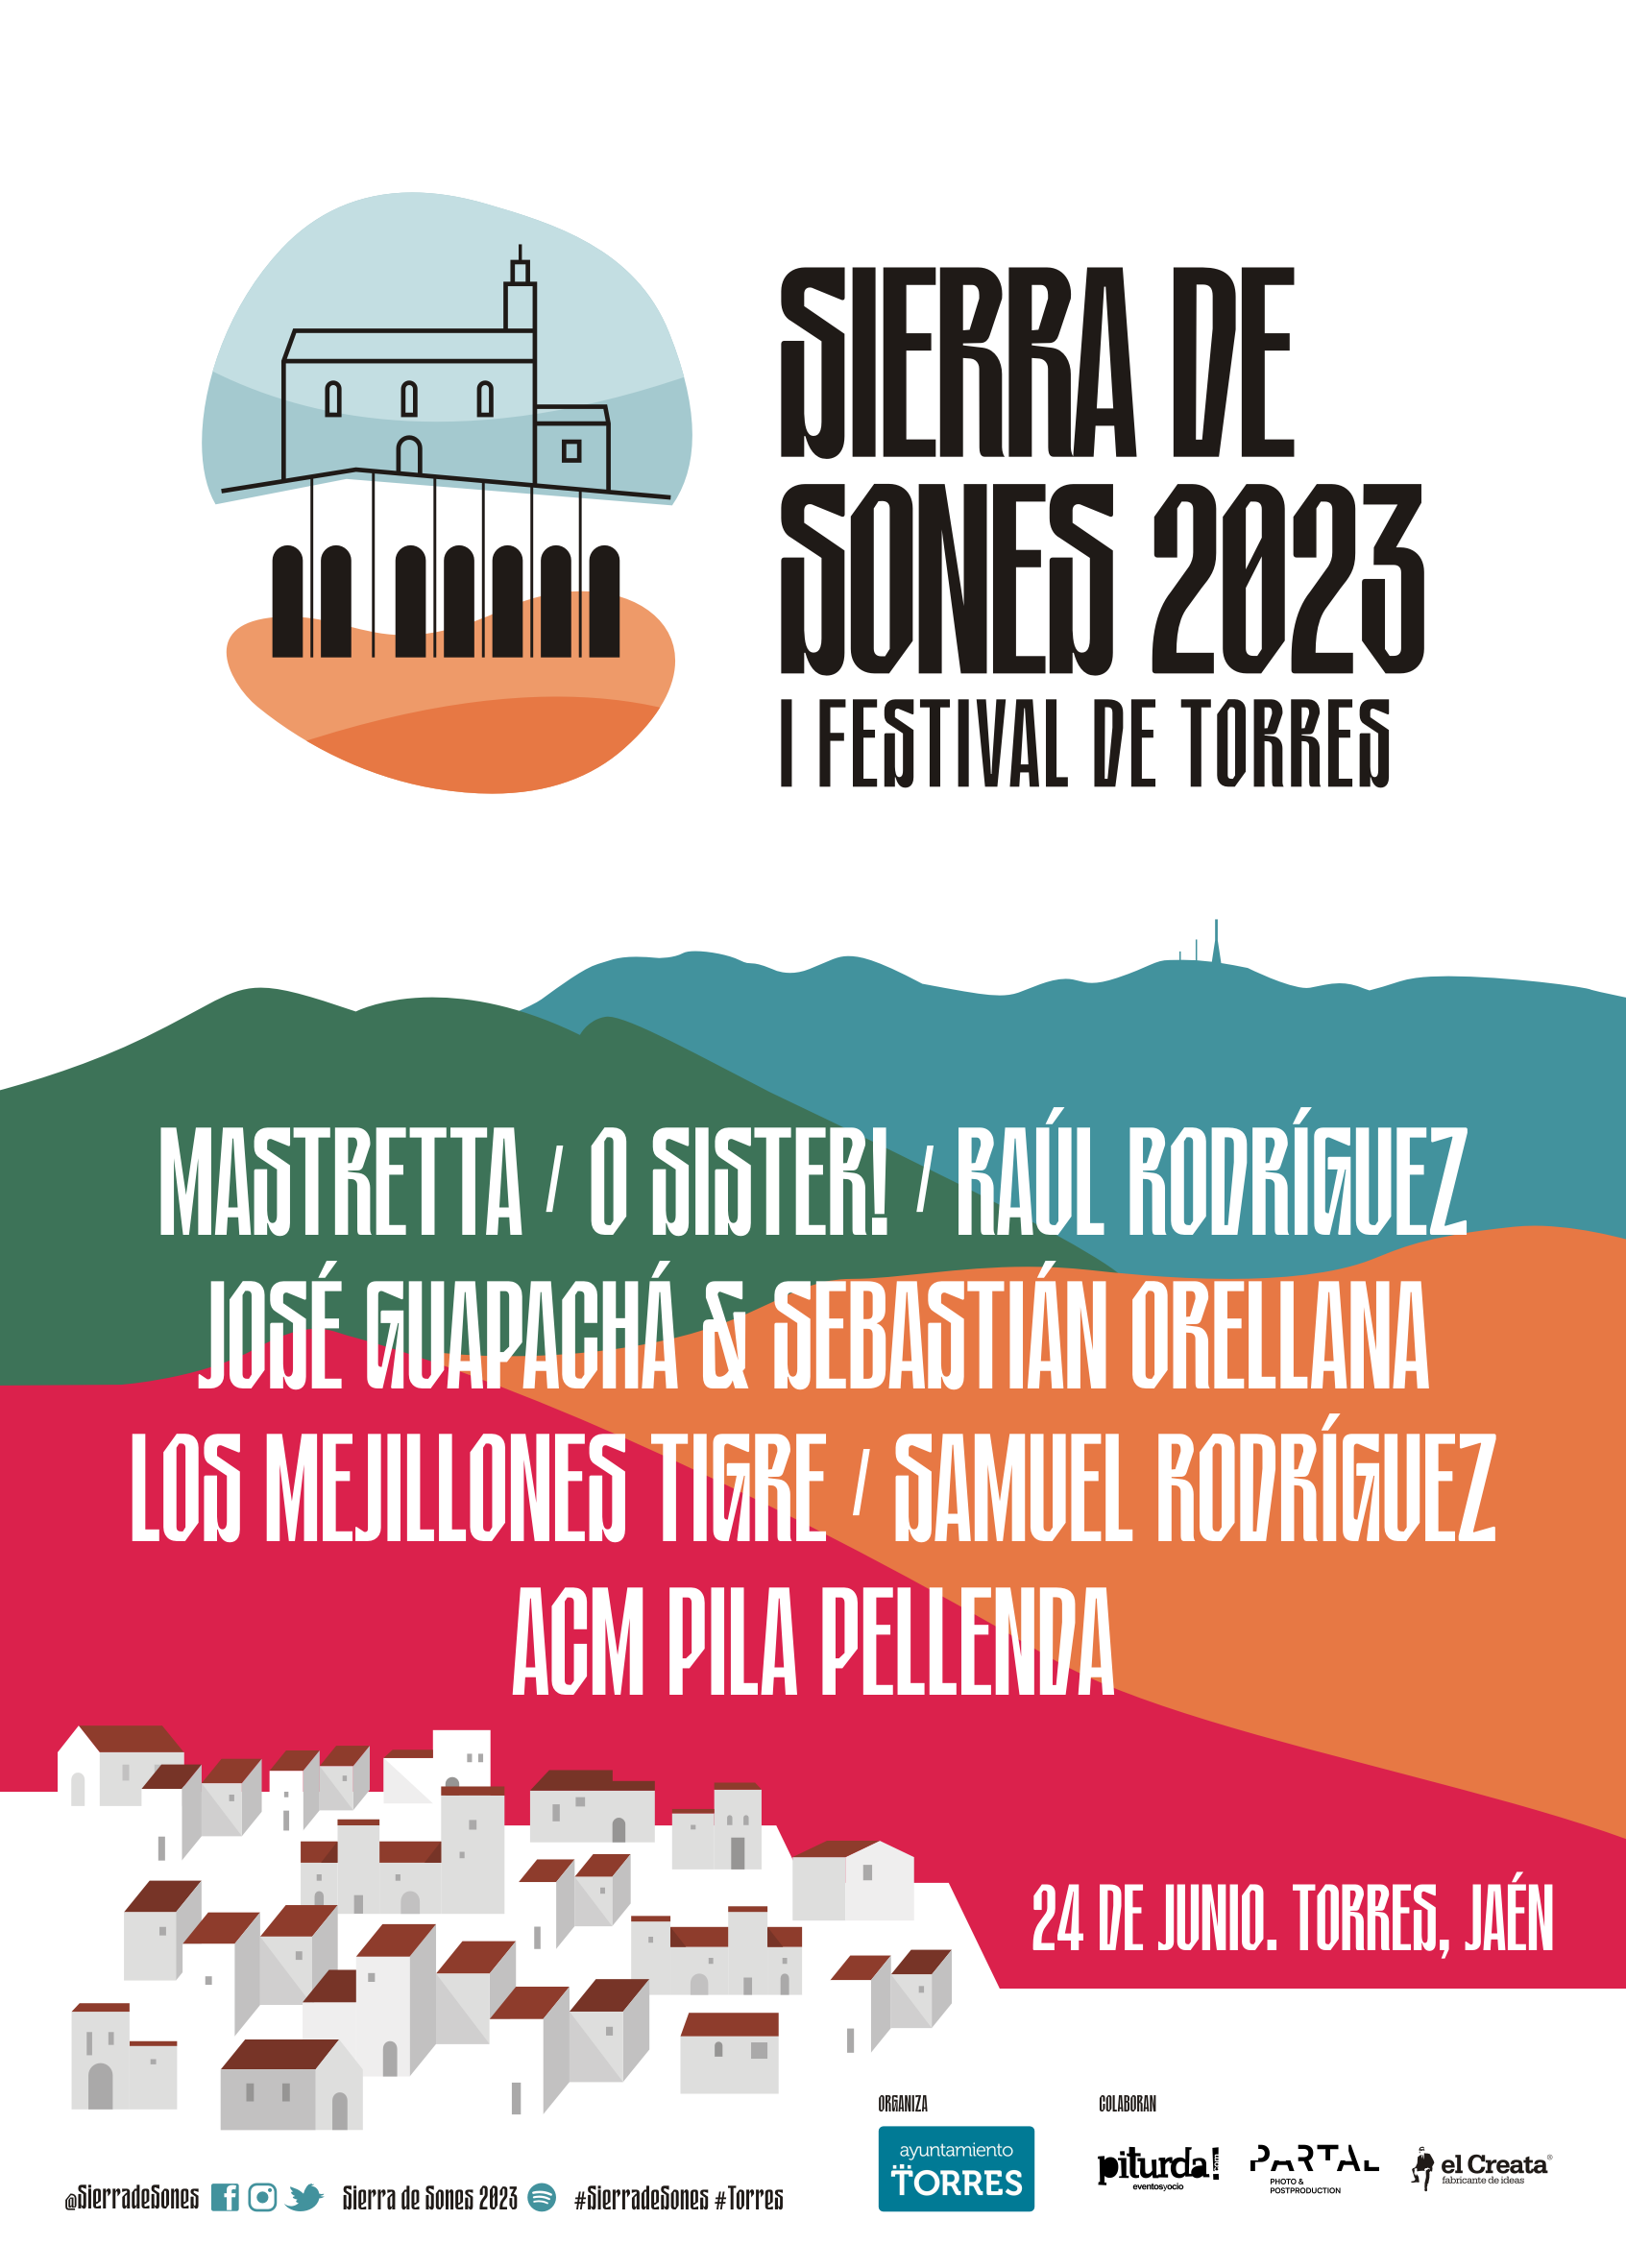 Festival Sierra de Sones 2023 el 24 de junio en Torres (Jaén)